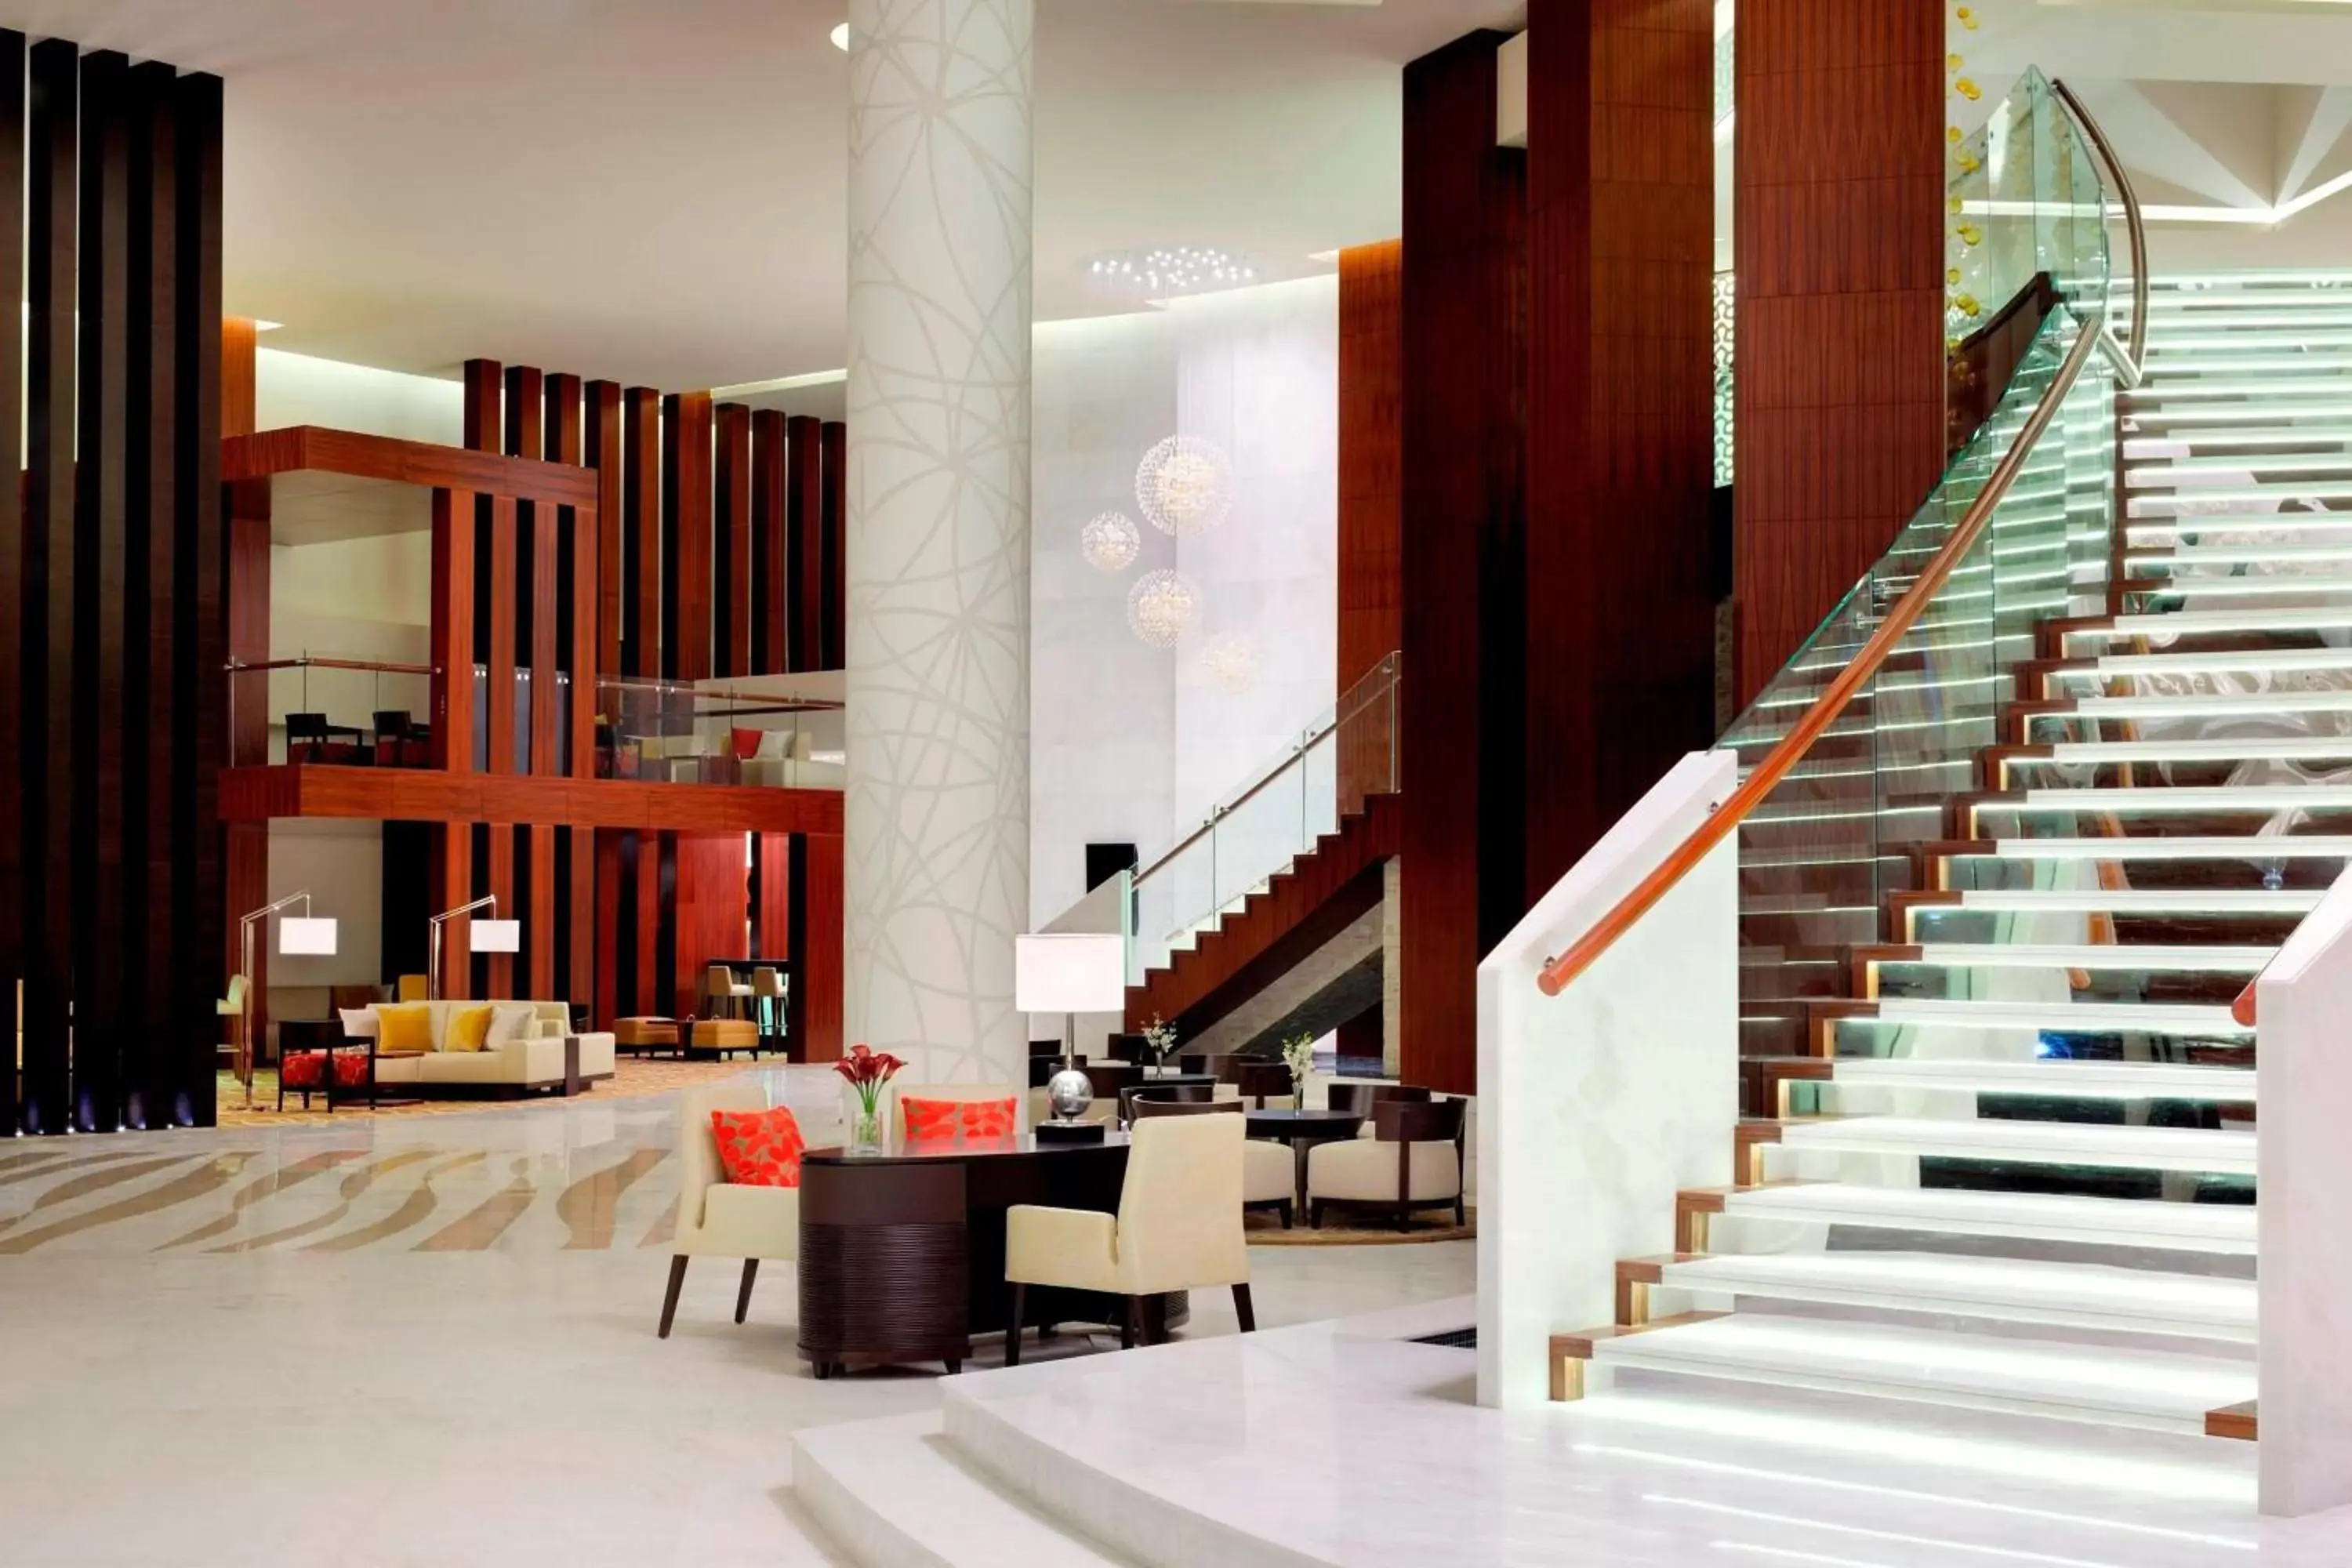 Lobby or reception in Marriott Hotel, Al Jaddaf, Dubai